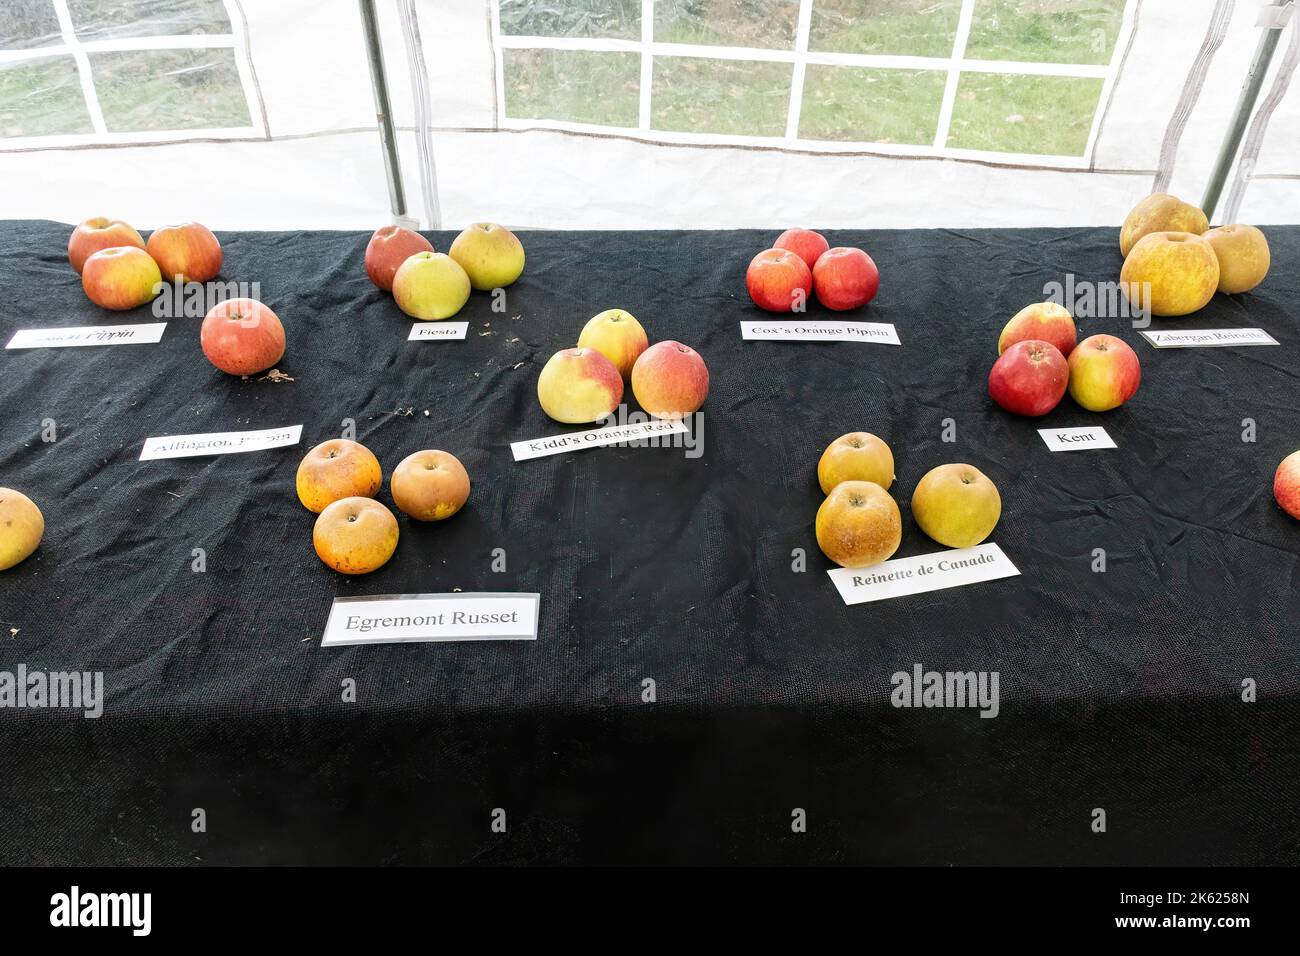 Blackmoor Apple Tasting Day, eine jährliche Herbstveranstaltung im Dorf Hampshire, England, im Oktober. Apfelsorten auf dem Display. Stockfoto